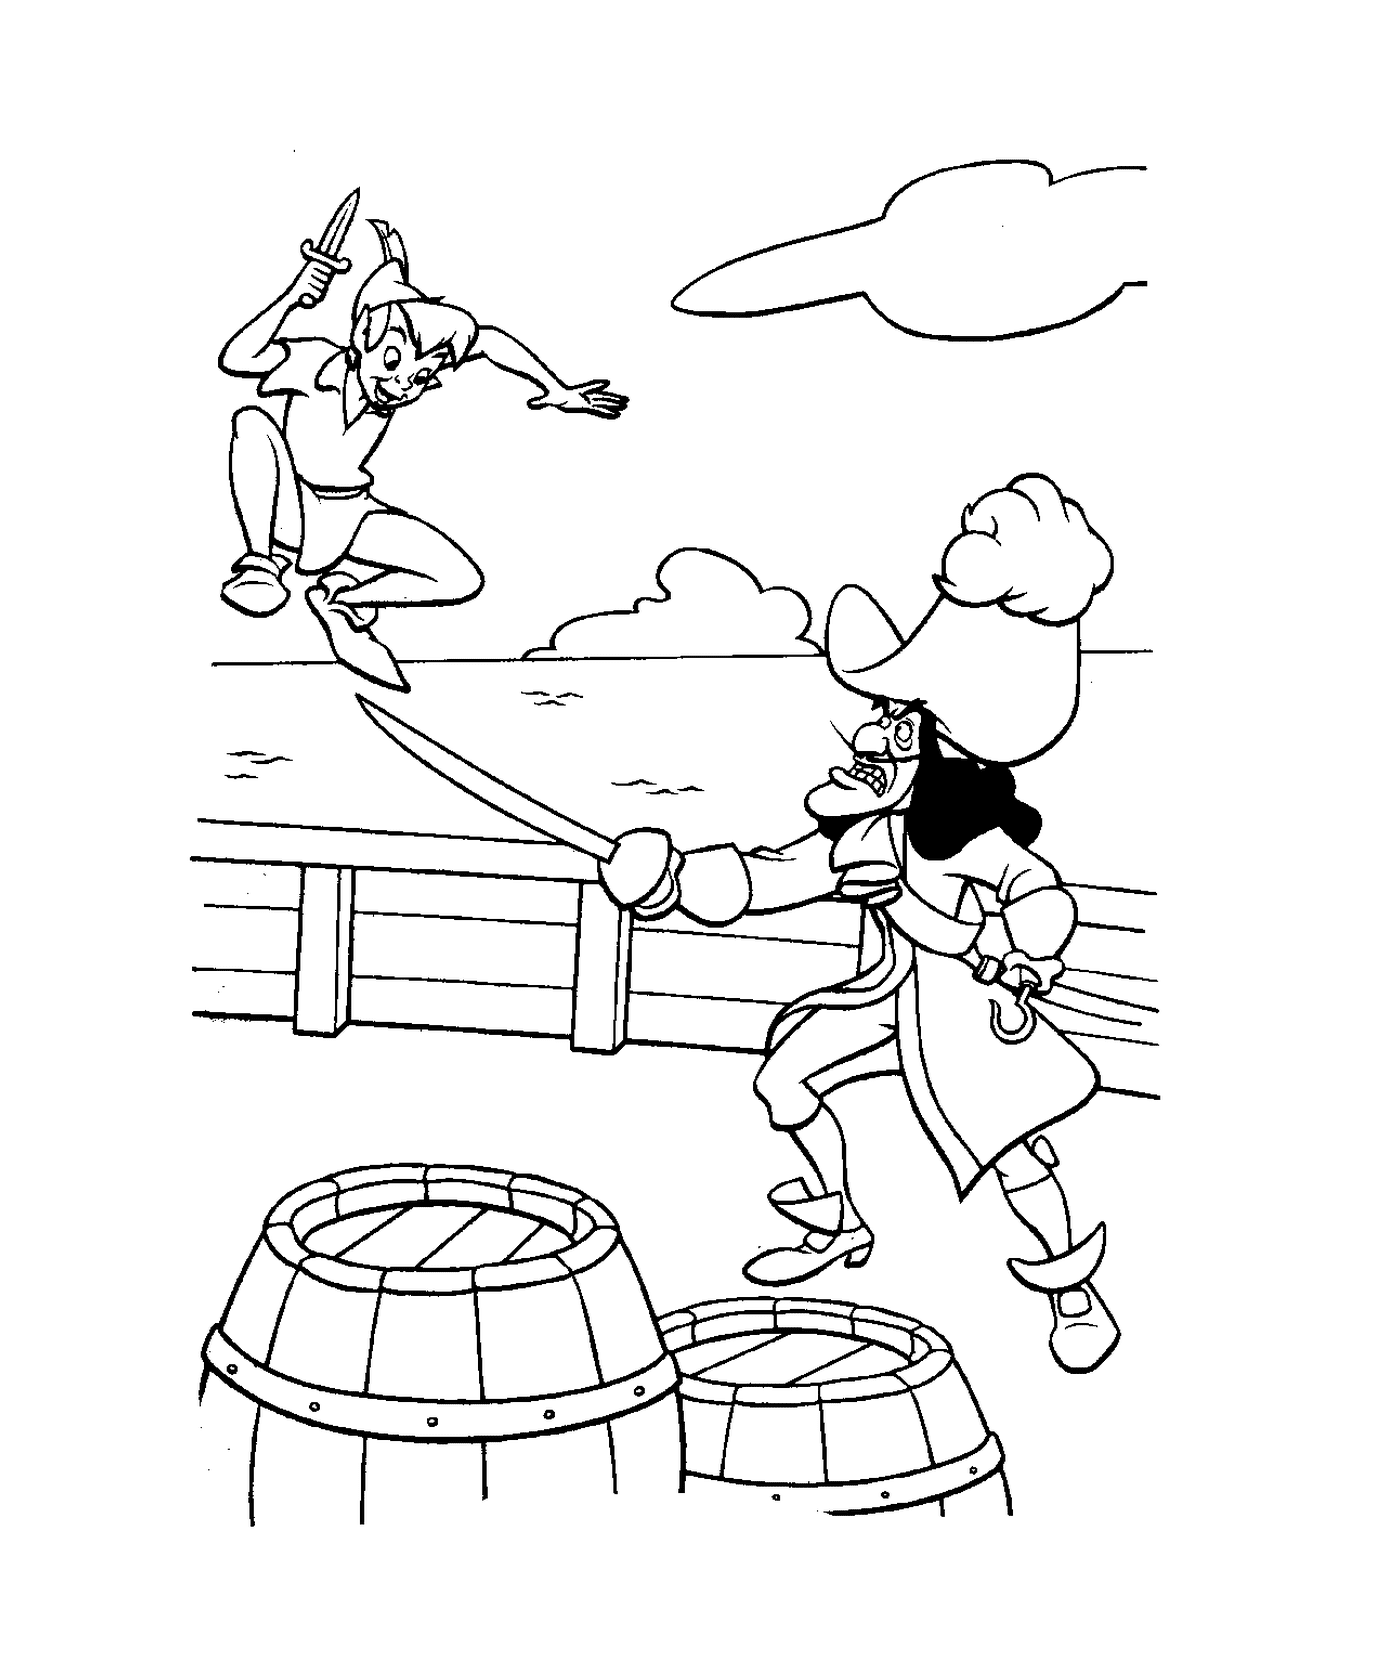  Peter Pan combate pirata no barco 